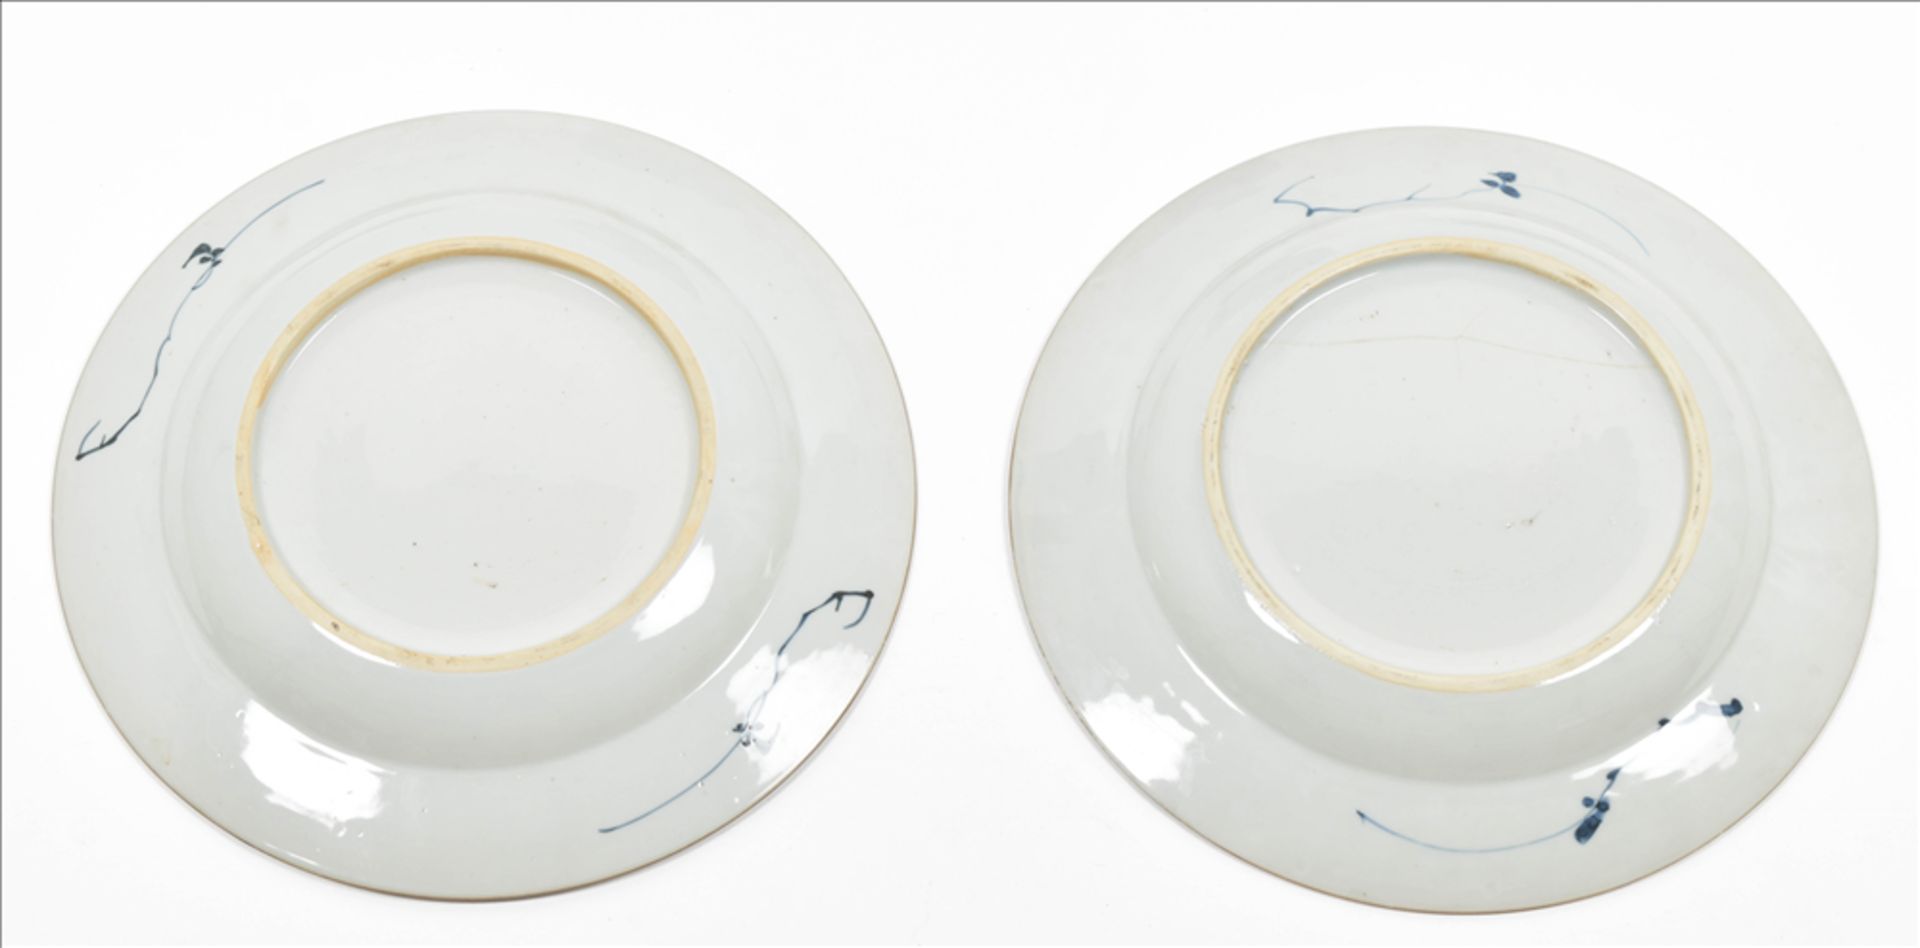 Five porcelain plates and a bowl - Bild 5 aus 8